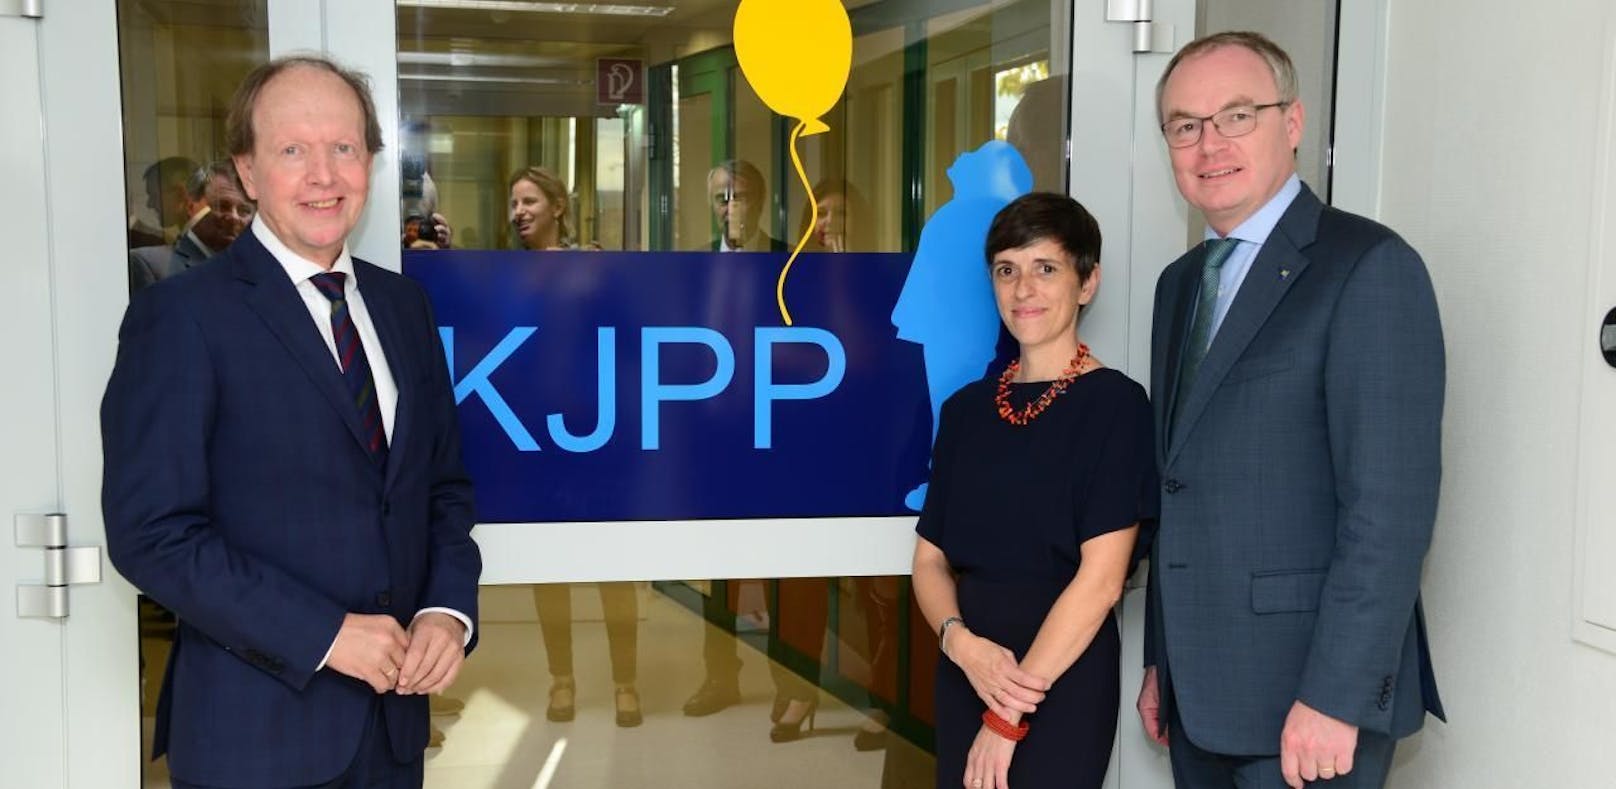 Regionalmanager Andreas Reifschneider, Leiterin Dr. Ursula Marinitsch sowie Landesvize Stephan Pernkopf eröffneten die neue Tagesklinik.